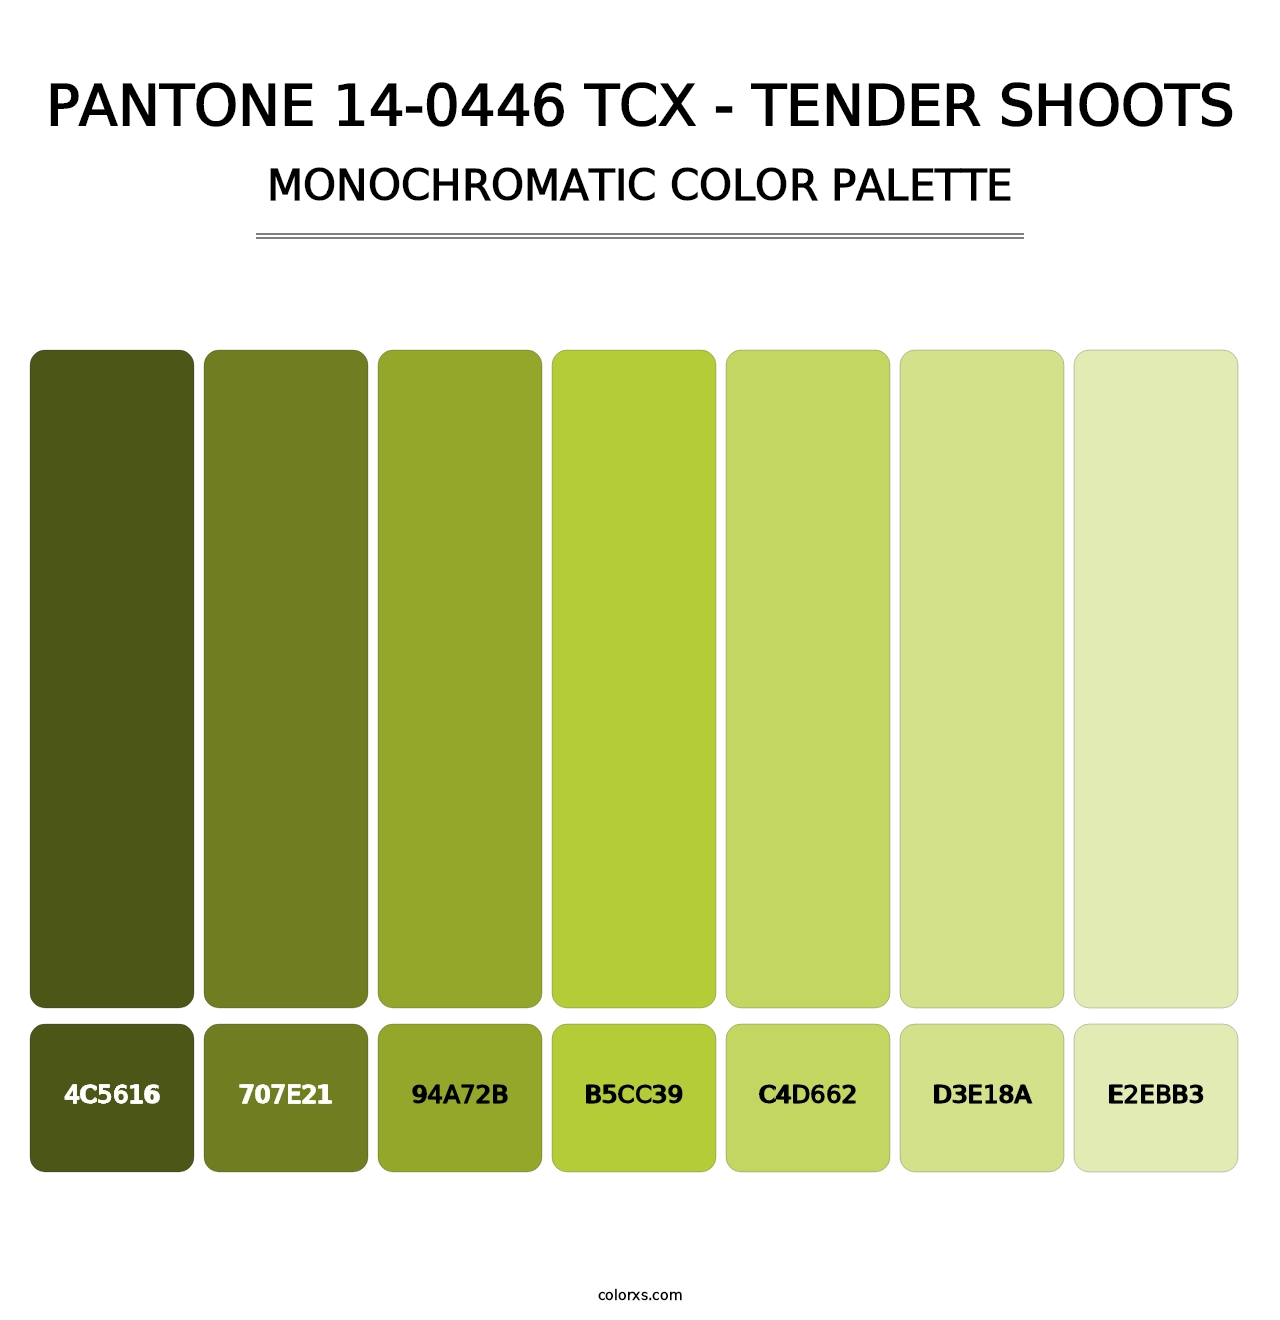 PANTONE 14-0446 TCX - Tender Shoots - Monochromatic Color Palette